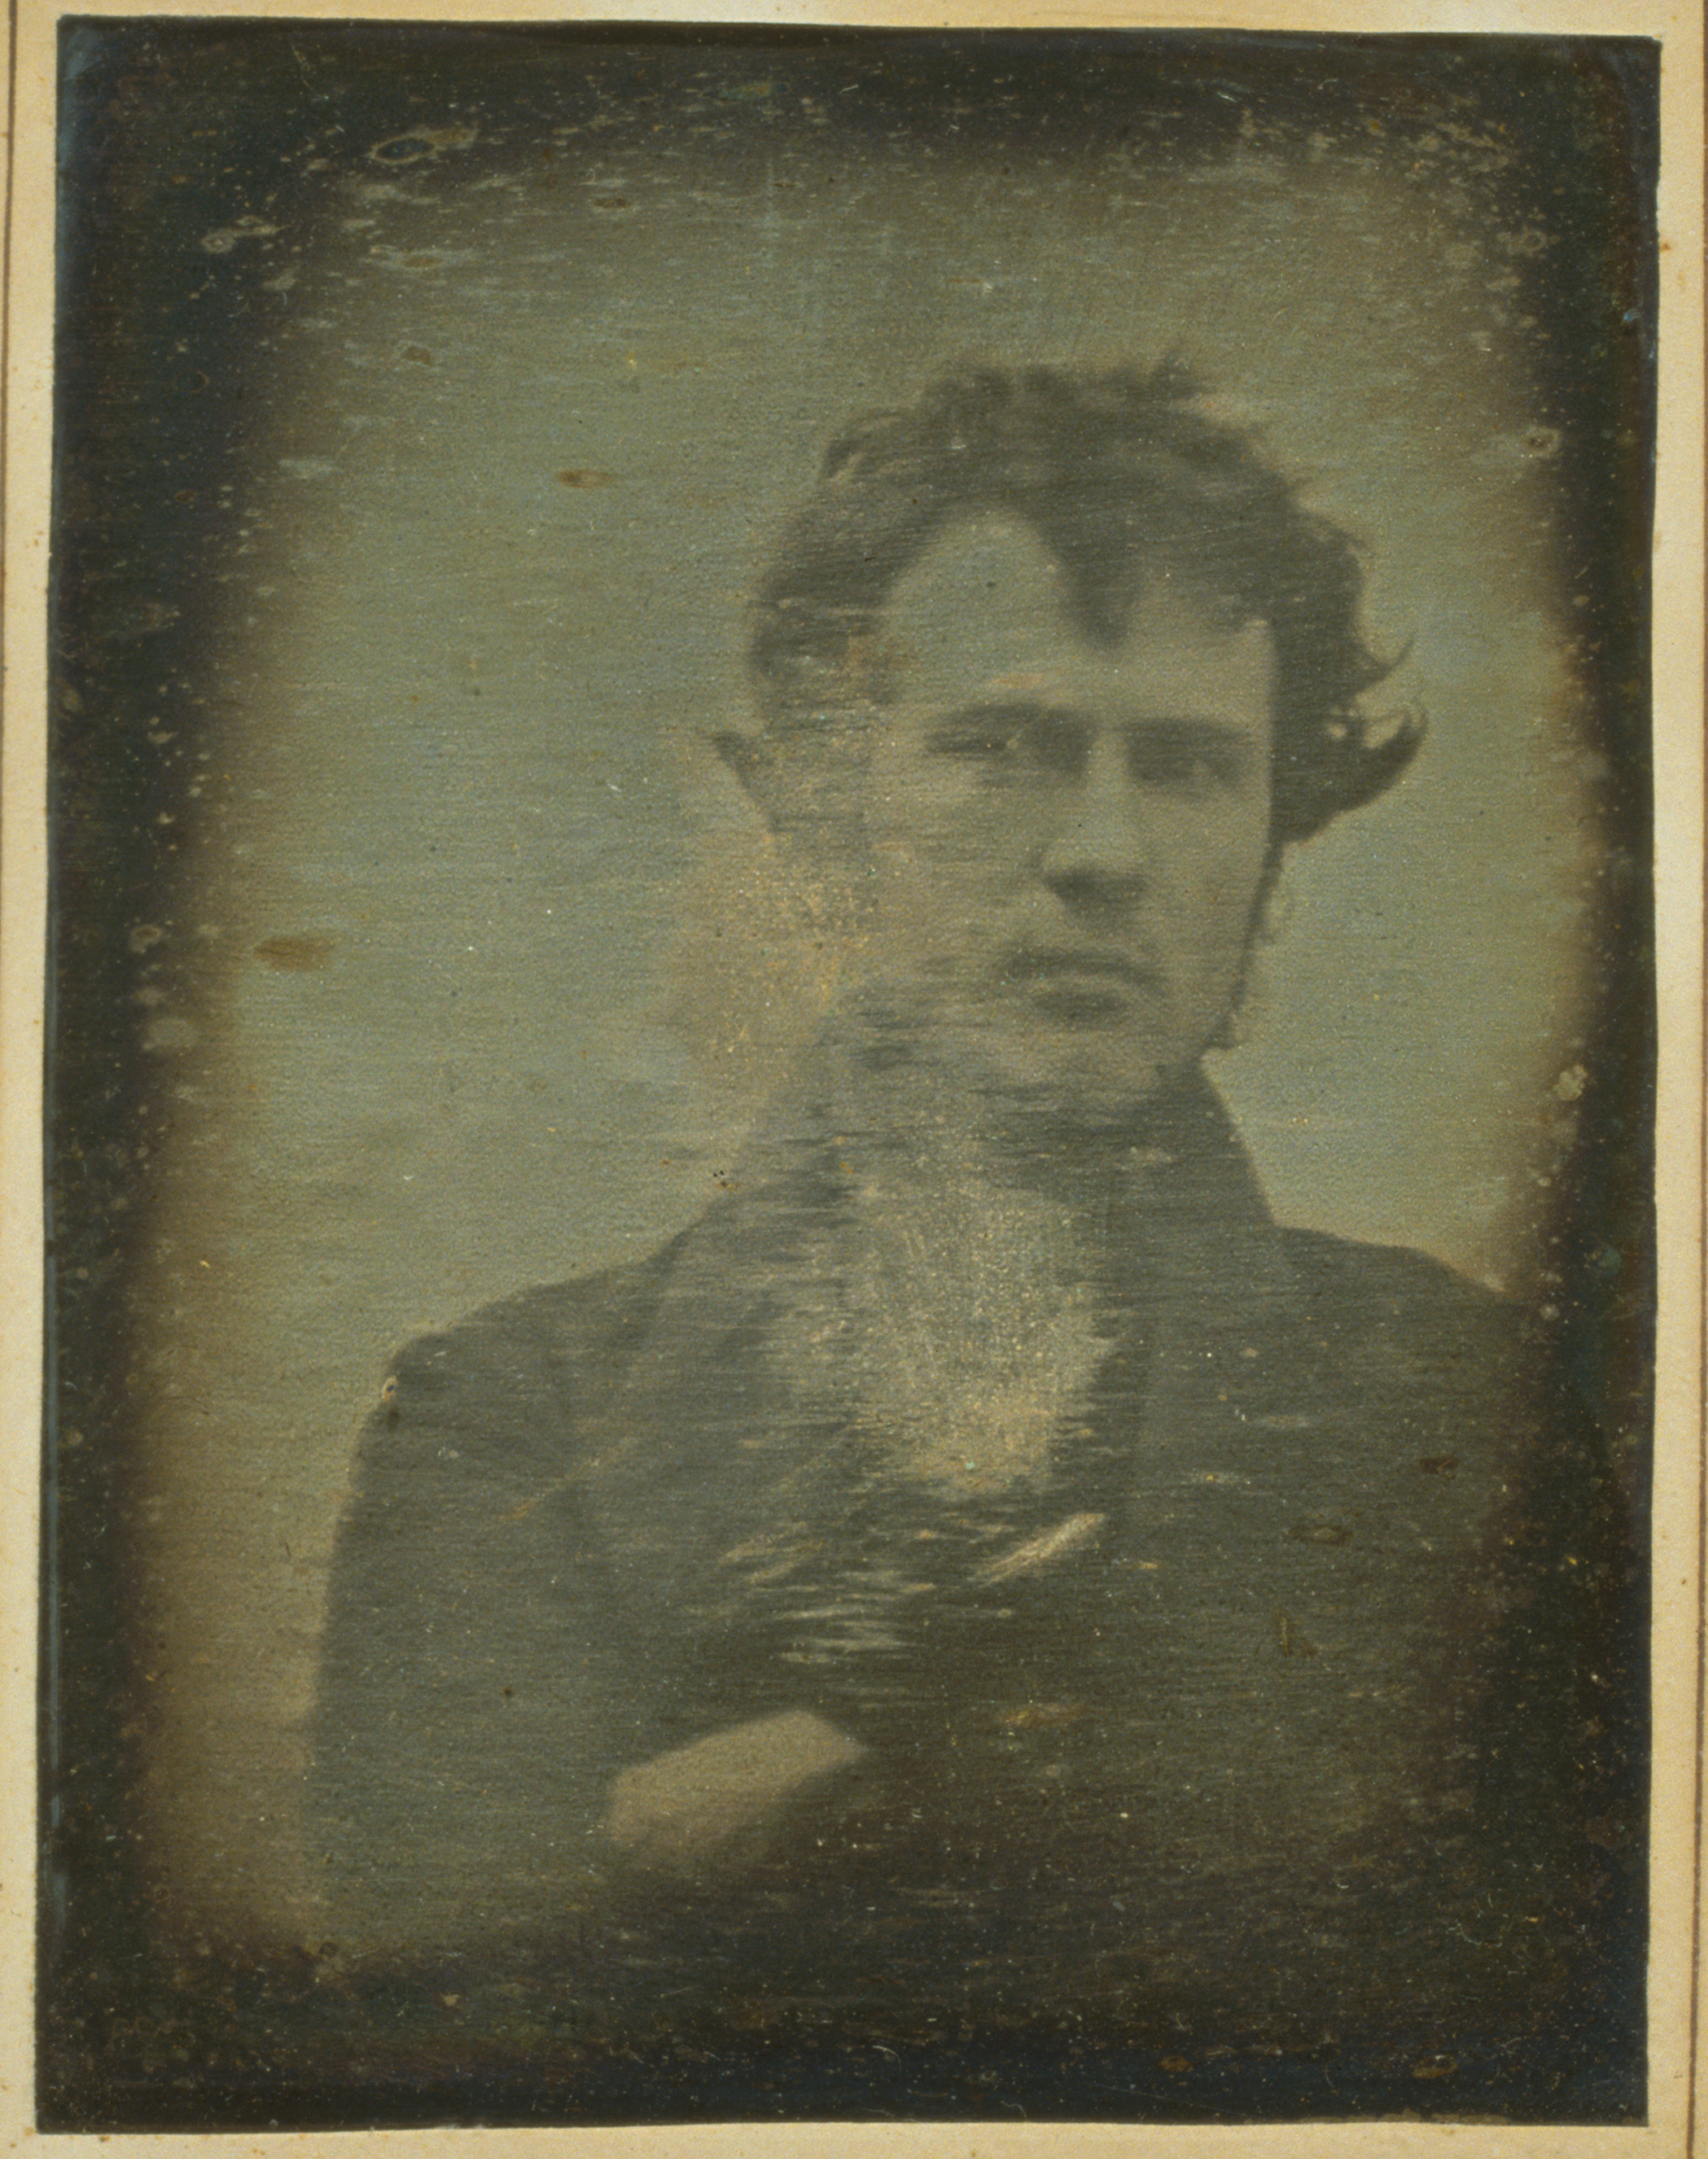 The first photographic selfie by Philadelphia photographer Robert Cornelius.